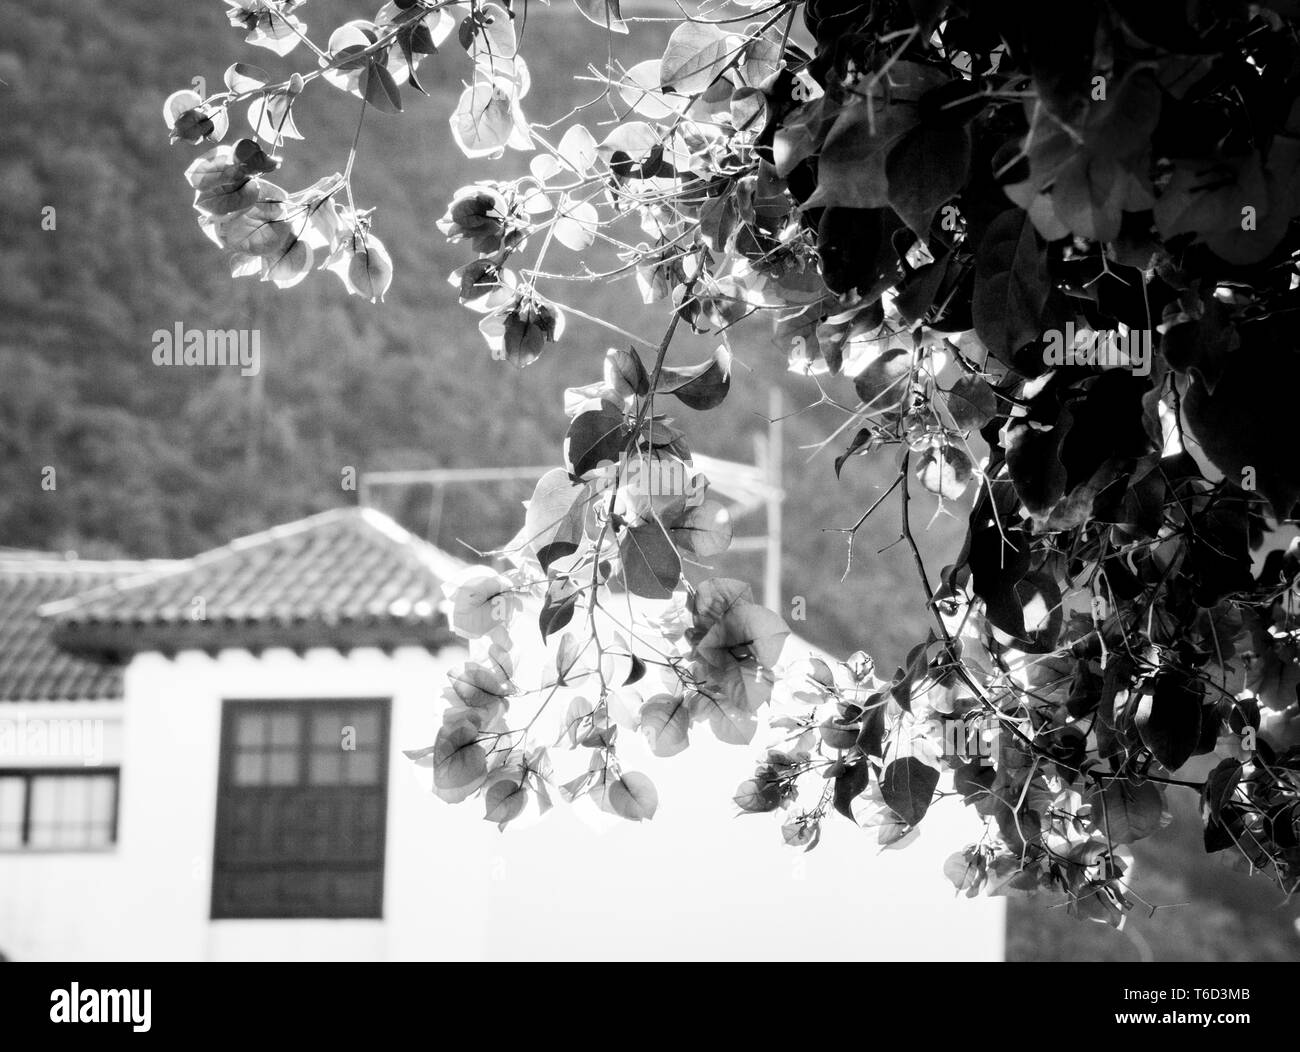 Close-up noir-blanc, gris photo de bougainvillaea​ fleurs sur le mur à Tenerife, Espagne, ville de Garachico Banque D'Images